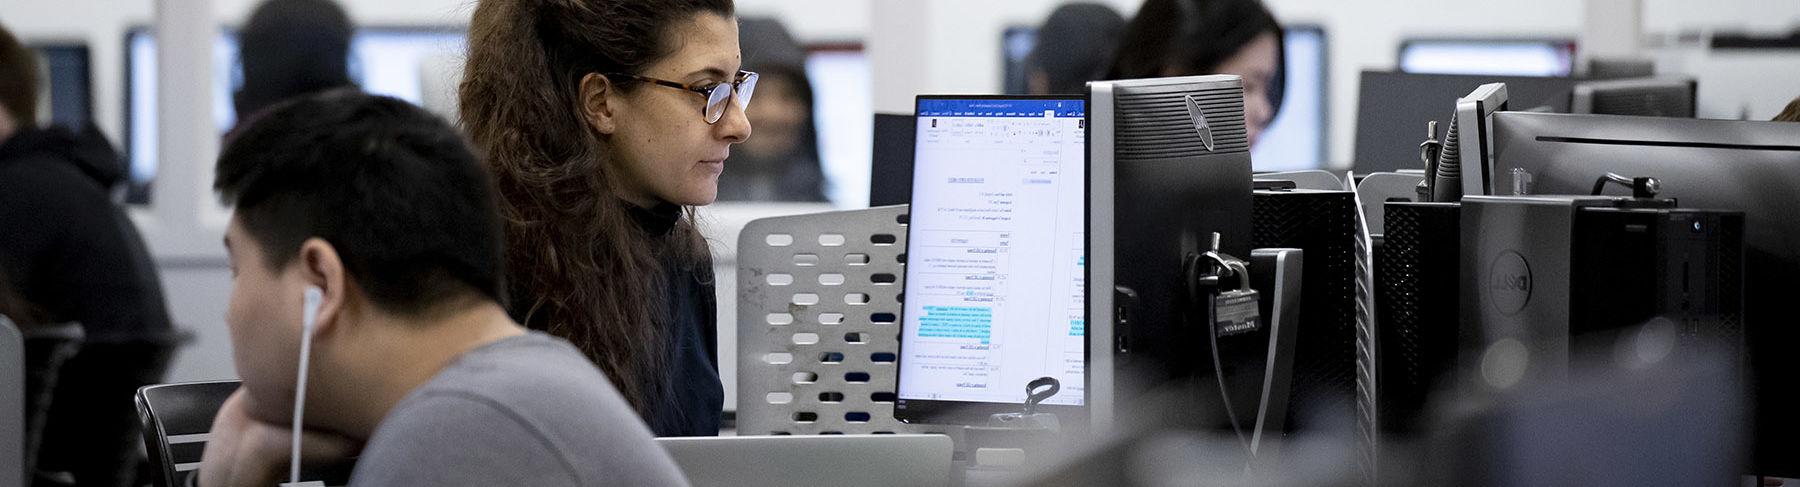 一个坐在技术实验室里盯着电脑屏幕的女人.